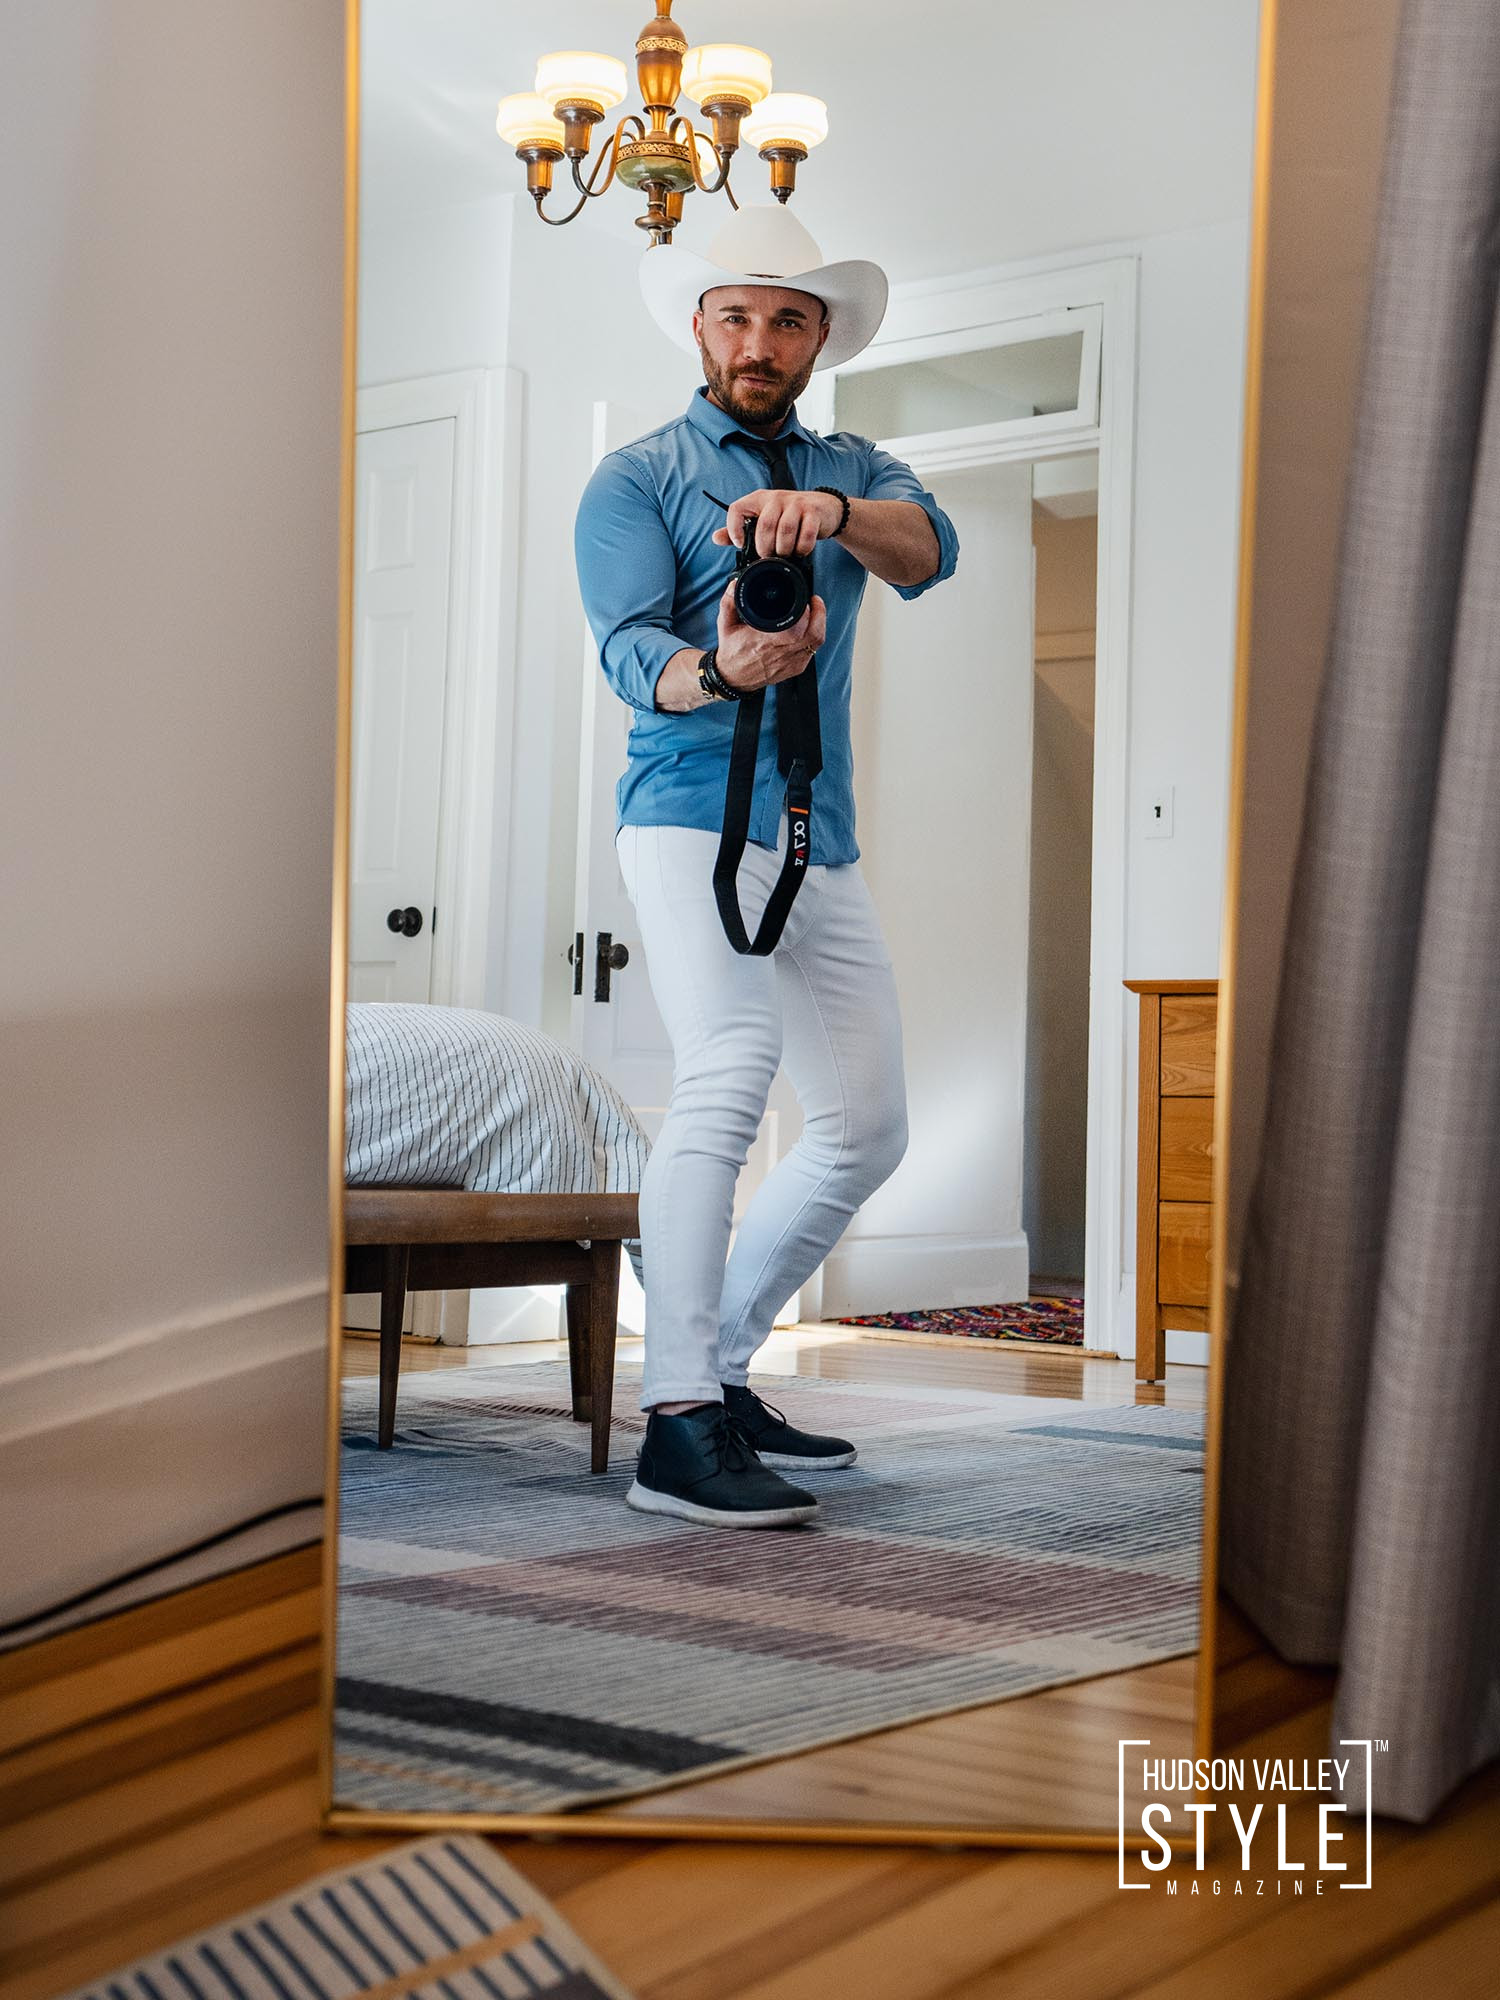 Explorando el Valor: ¿Vale la Pena Contratar un Fotógrafo para tu Airbnb? - Presentado por Alluvion Media - Los Mejores Fotógrafos de STR en Hudson Valley, Catskills, NYC y Hamptons de Nueva York